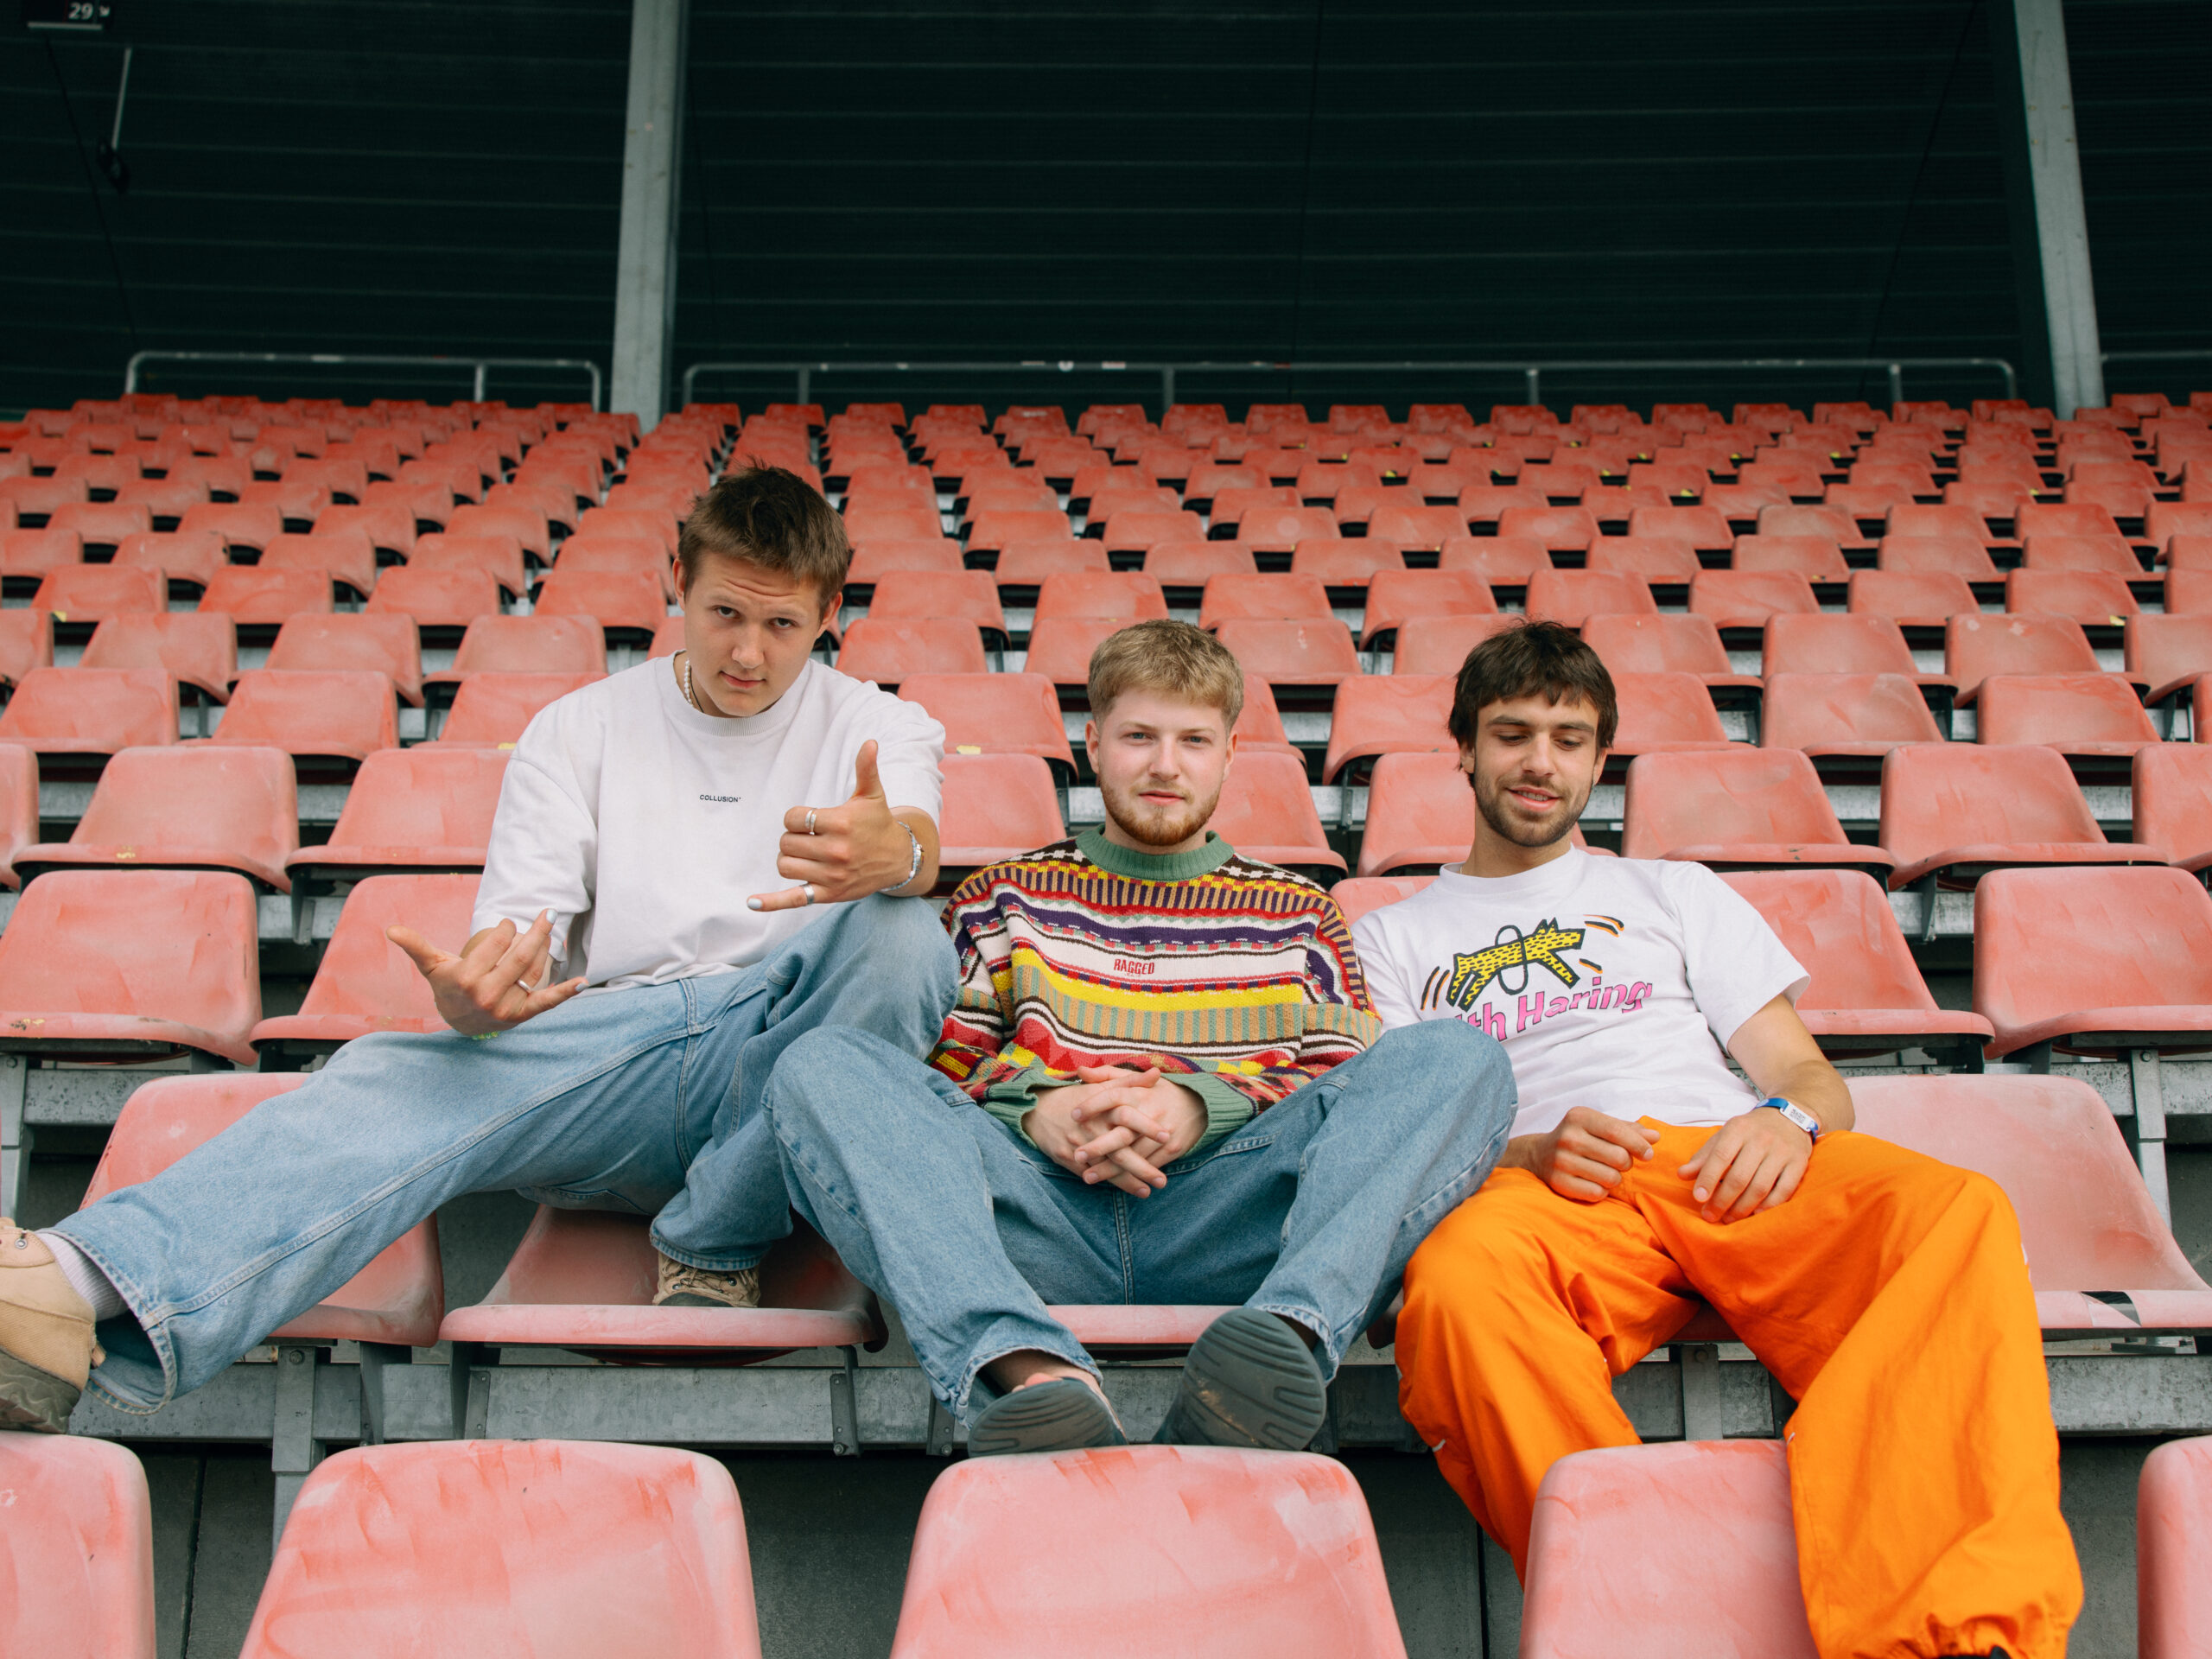 Drei junge Männer, die zusammen die Band 01099 bilden sitzen auf dem Bild nebeneinander auf den orangen Stühlen der Tribüne eines Fußballstadions. Die drei sitzen lässig eng neben einander und posen in die Kamera.